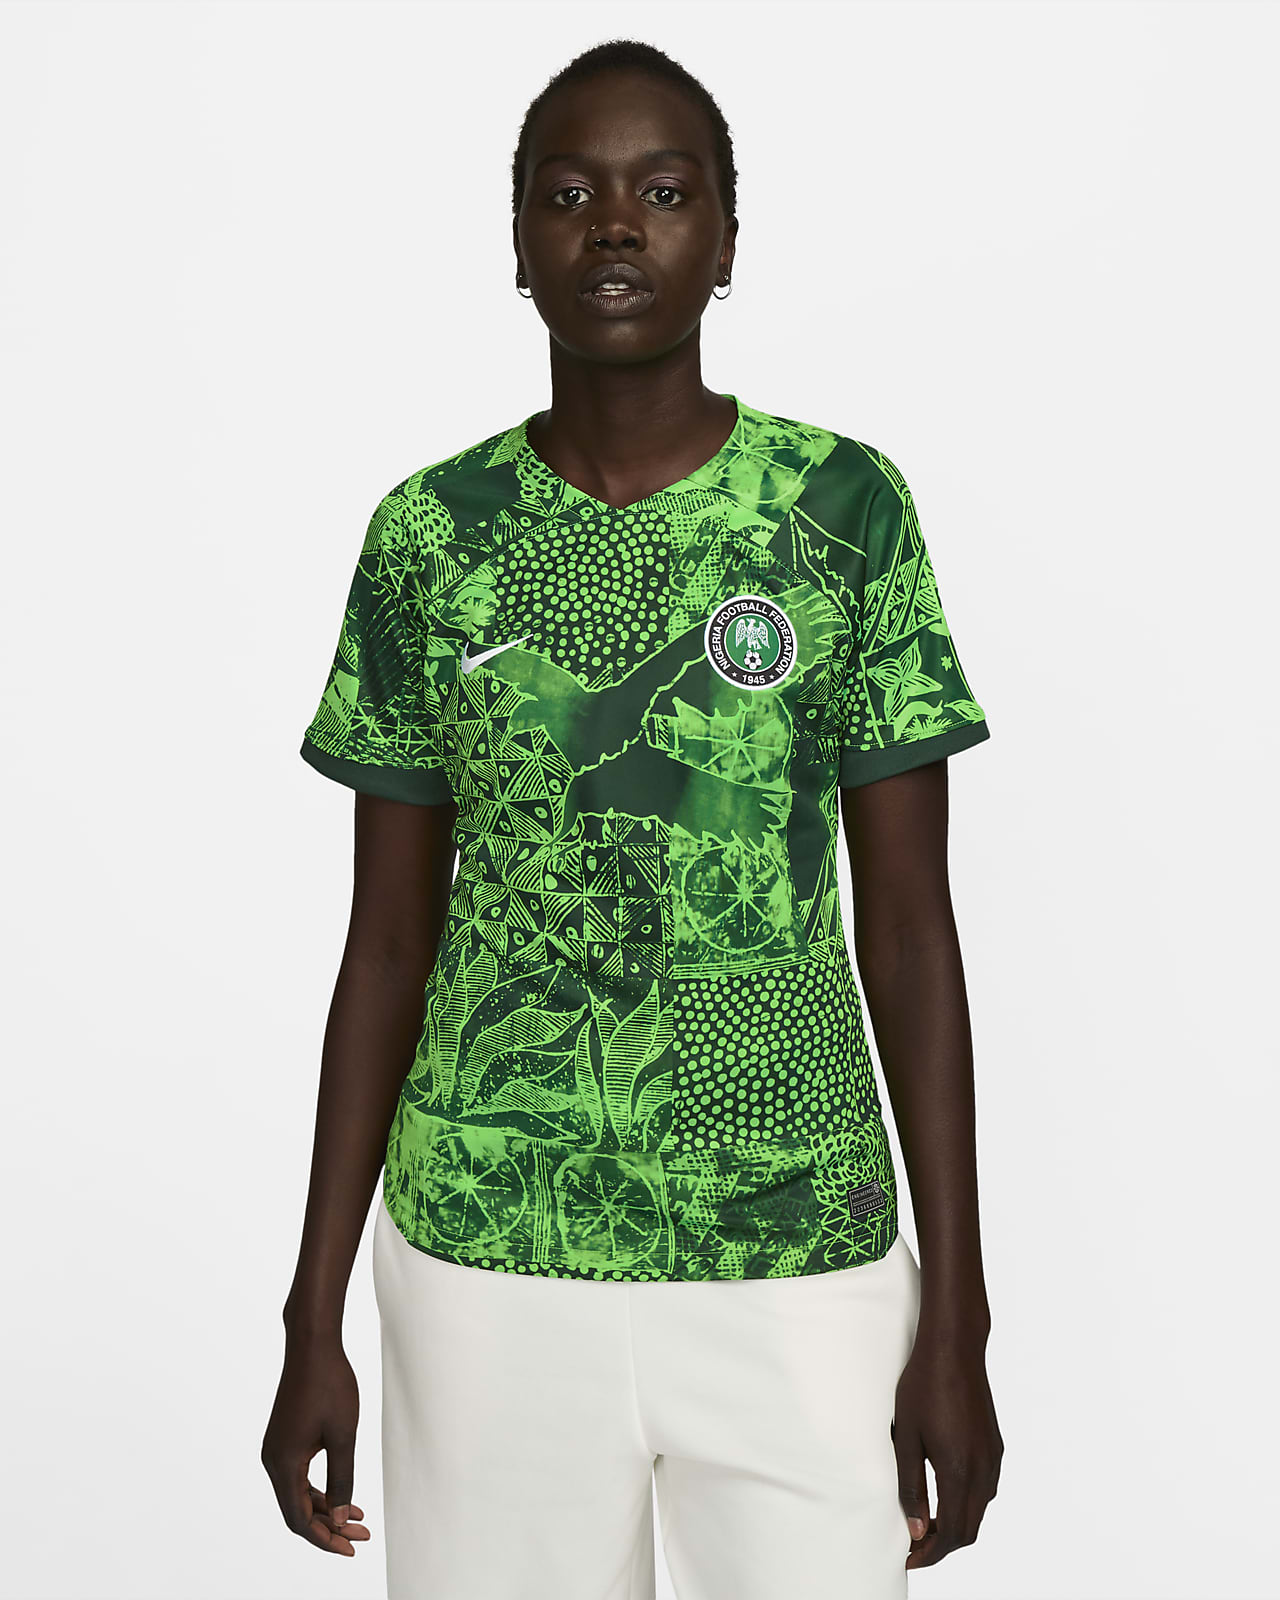 Etna personalizado Aislar Jersey de fútbol Nike Dri-FIT para mujer de Nigeria local 2022/23 Stadium.  Nike.com